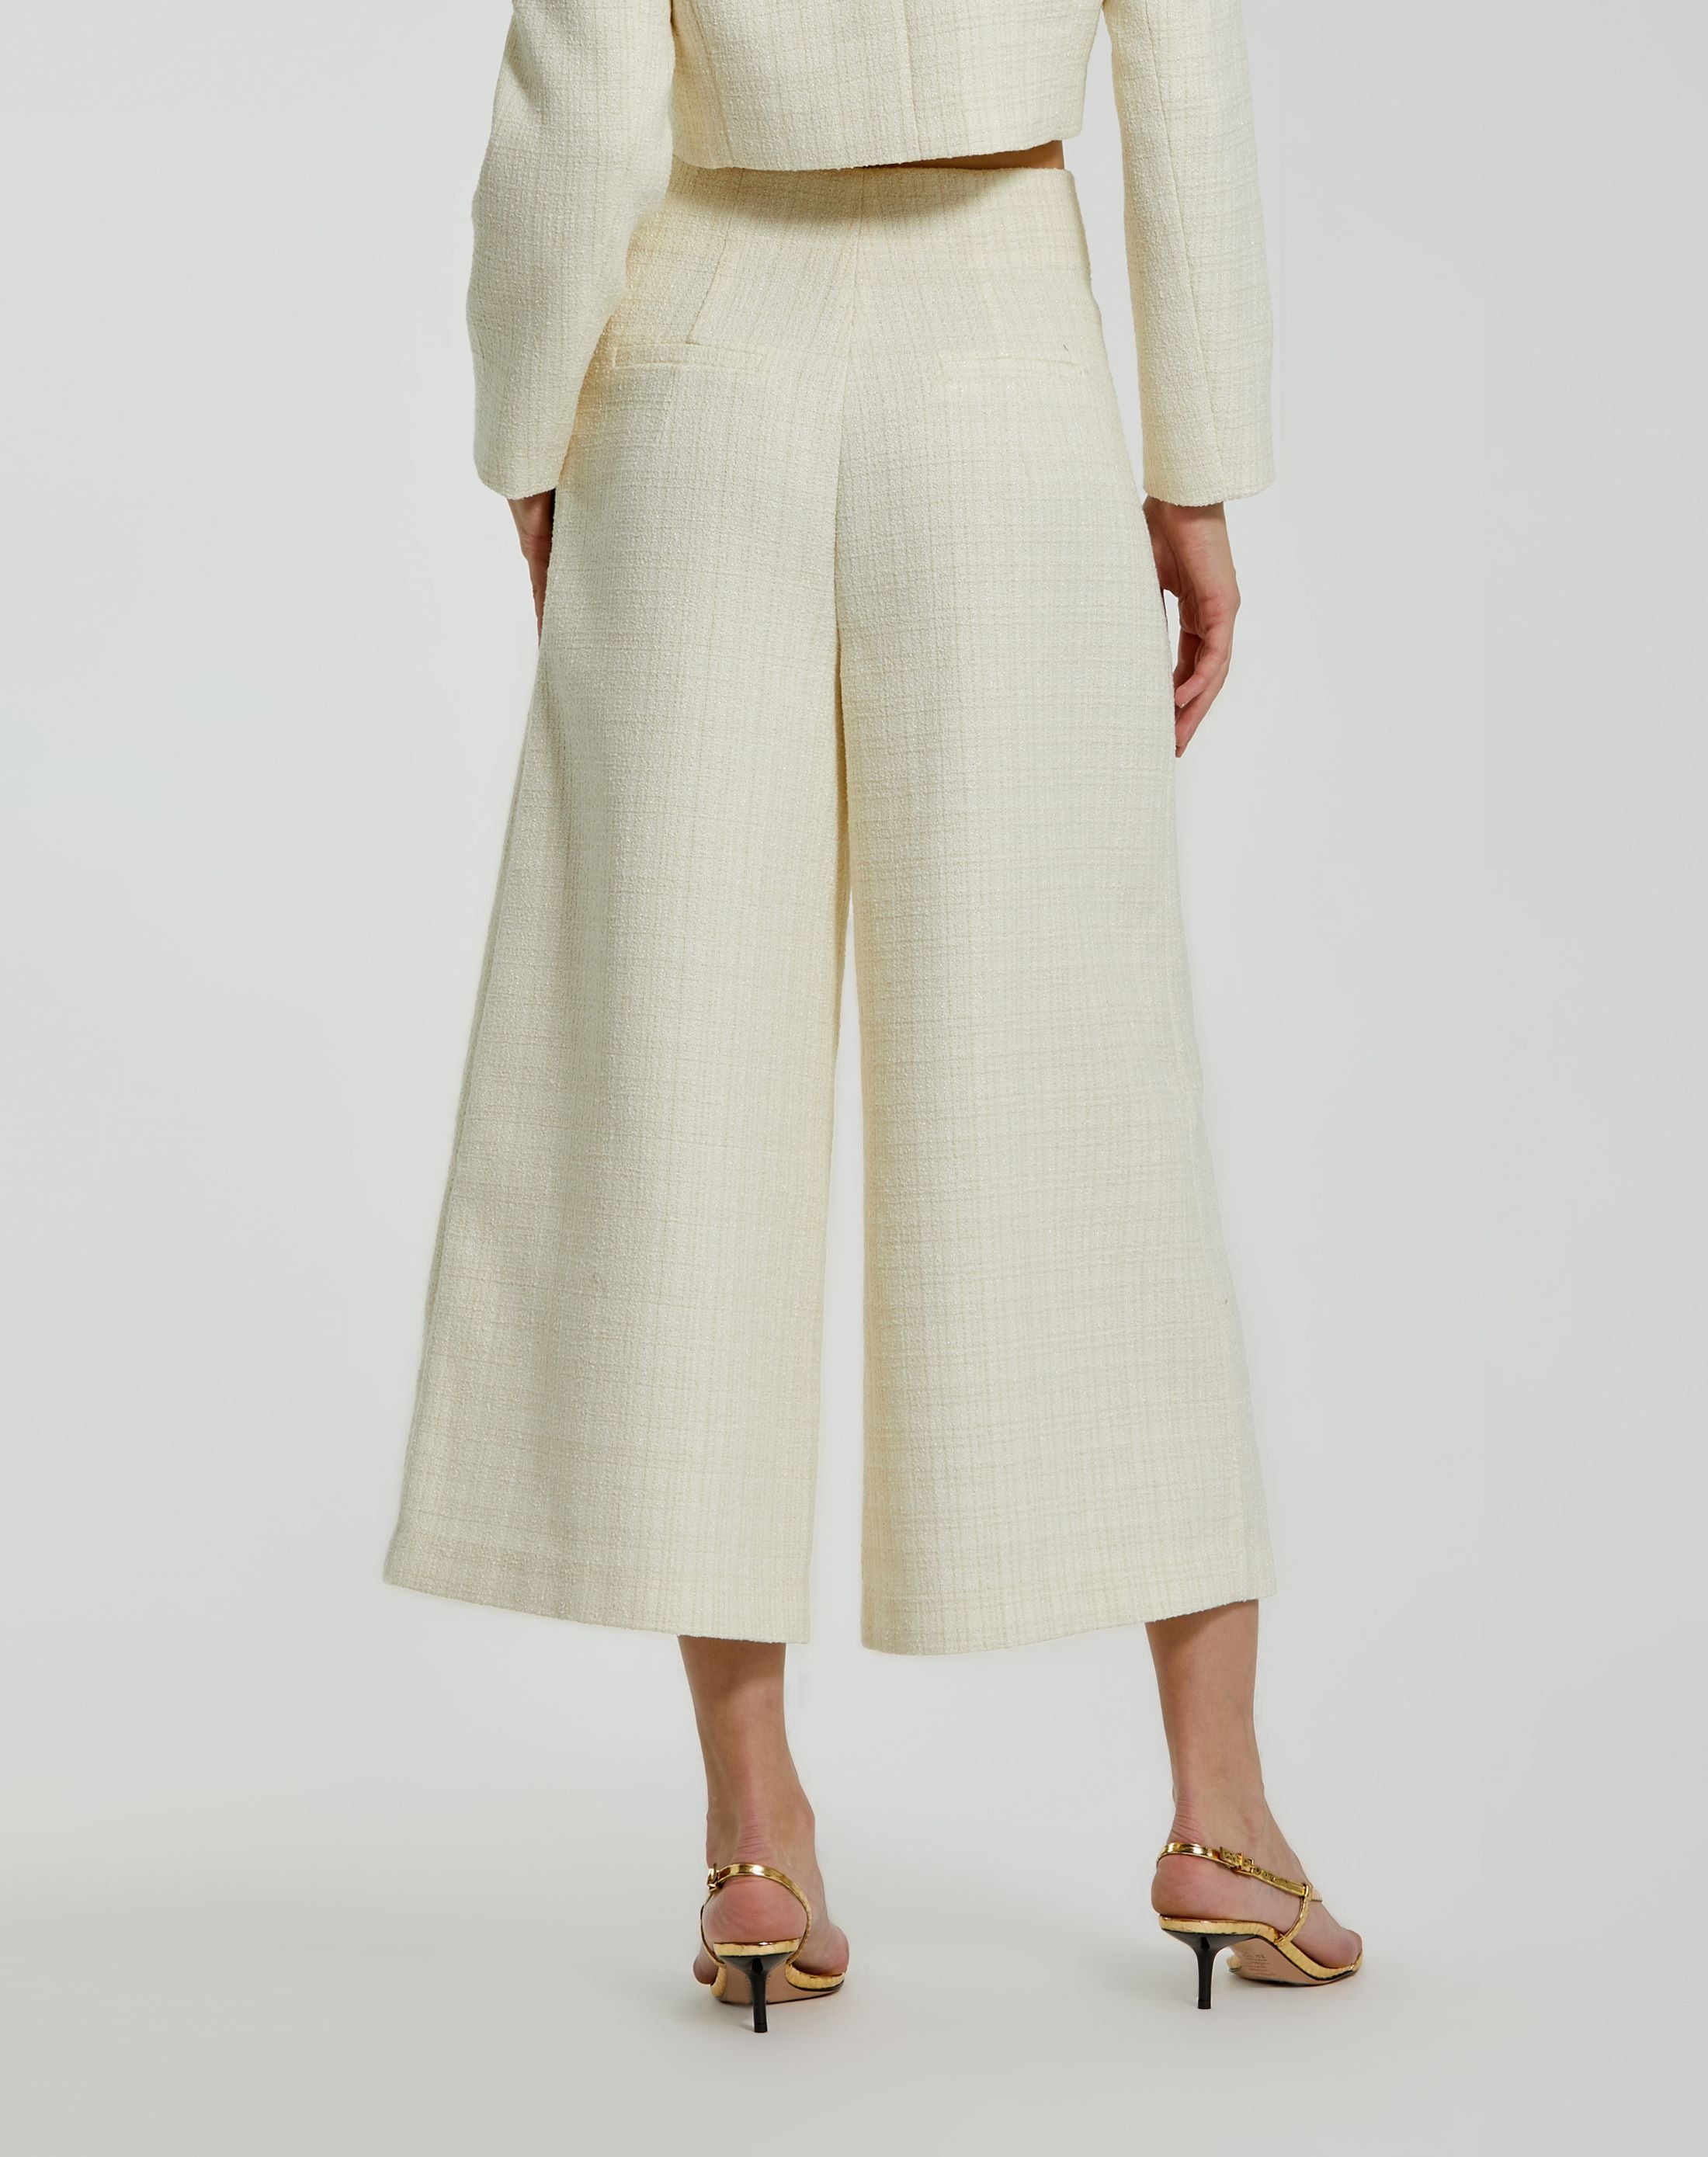 Pantalon marin taille haute en tweed ivoire avec boutons dorés